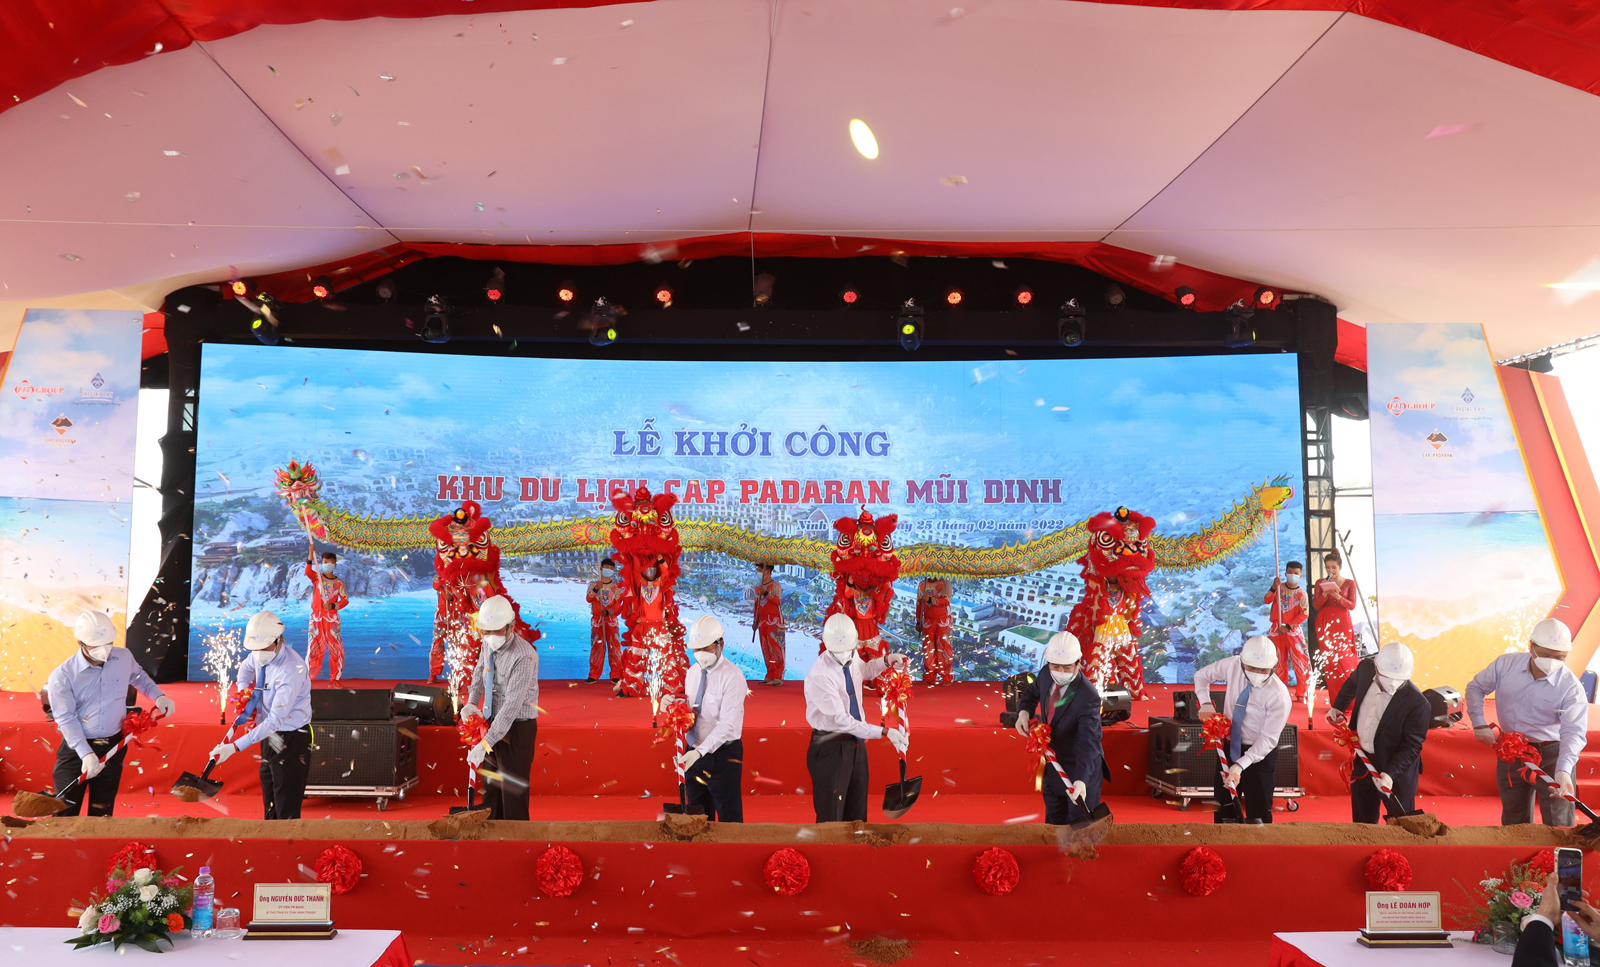 Phó Tổng cục trưởng Hà Văn Siêu dự lễ khởi công dự án Cap Padaran Mũi Dinh Ninh Thuận